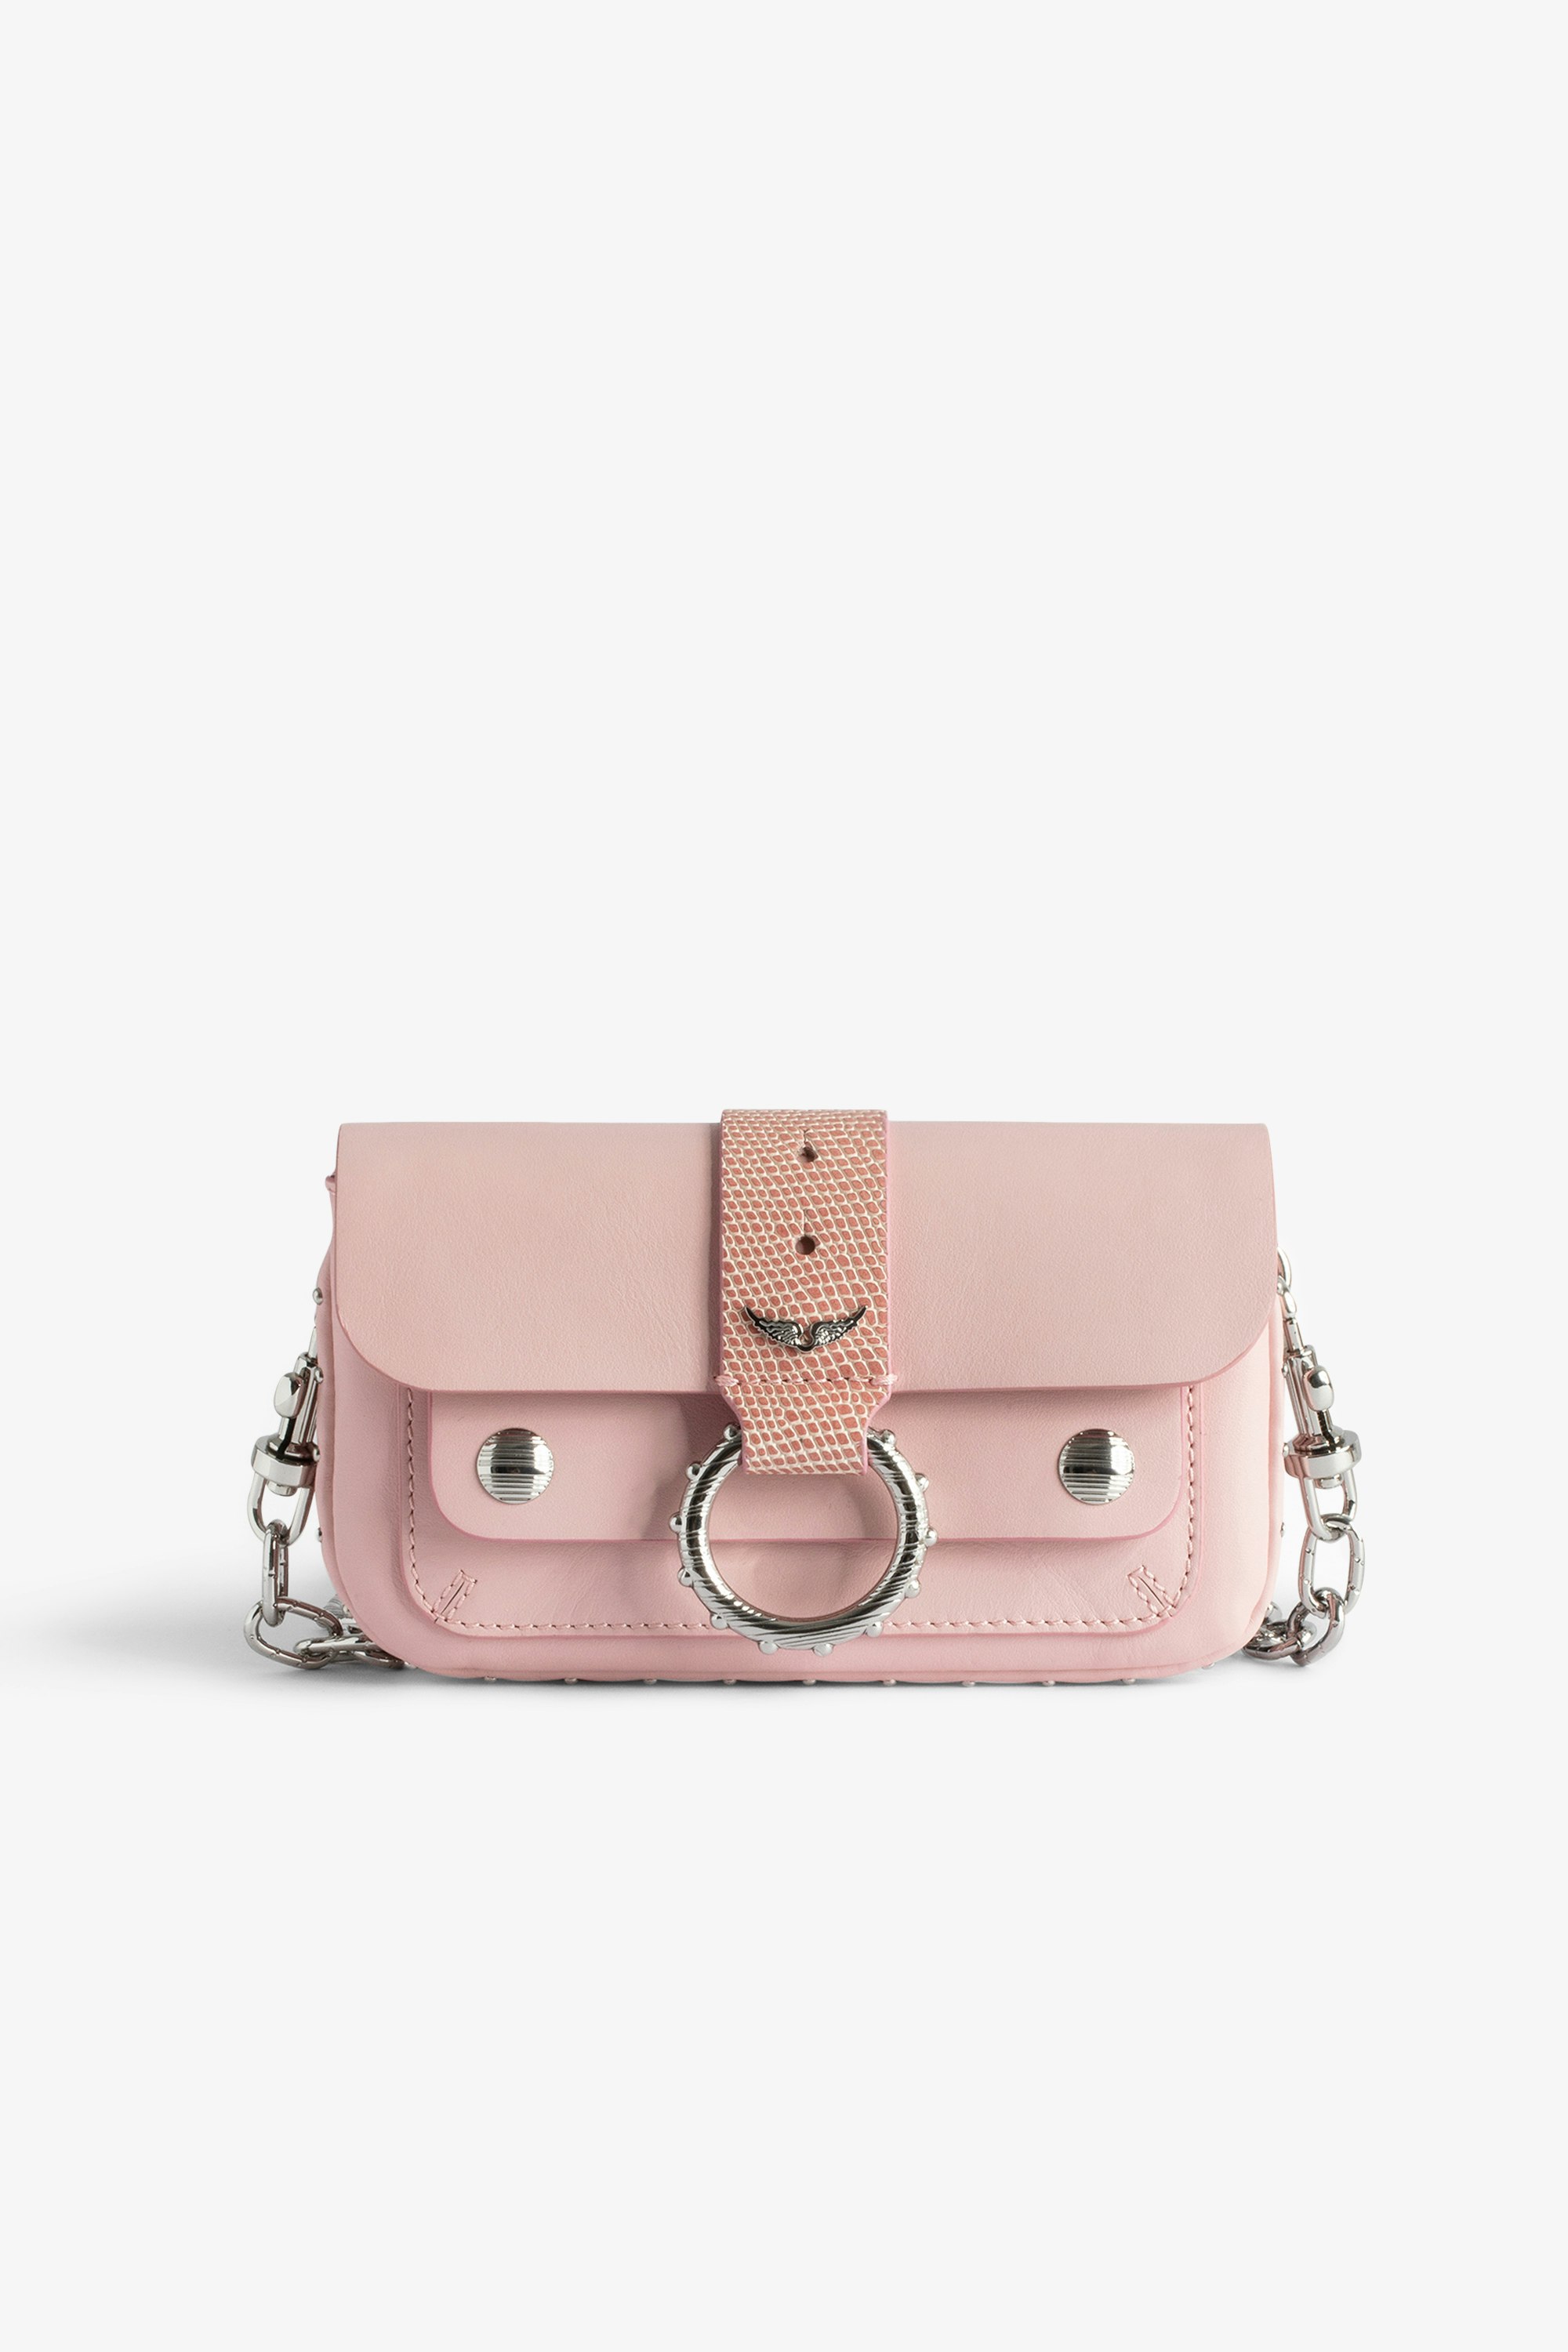 Tasche Kate Wallet - Mini-Tasche aus rosafarbenem Glattleder mit Metallkette und Riemen aus geprägtem Leder mit Leguan-Effekt für Damen.